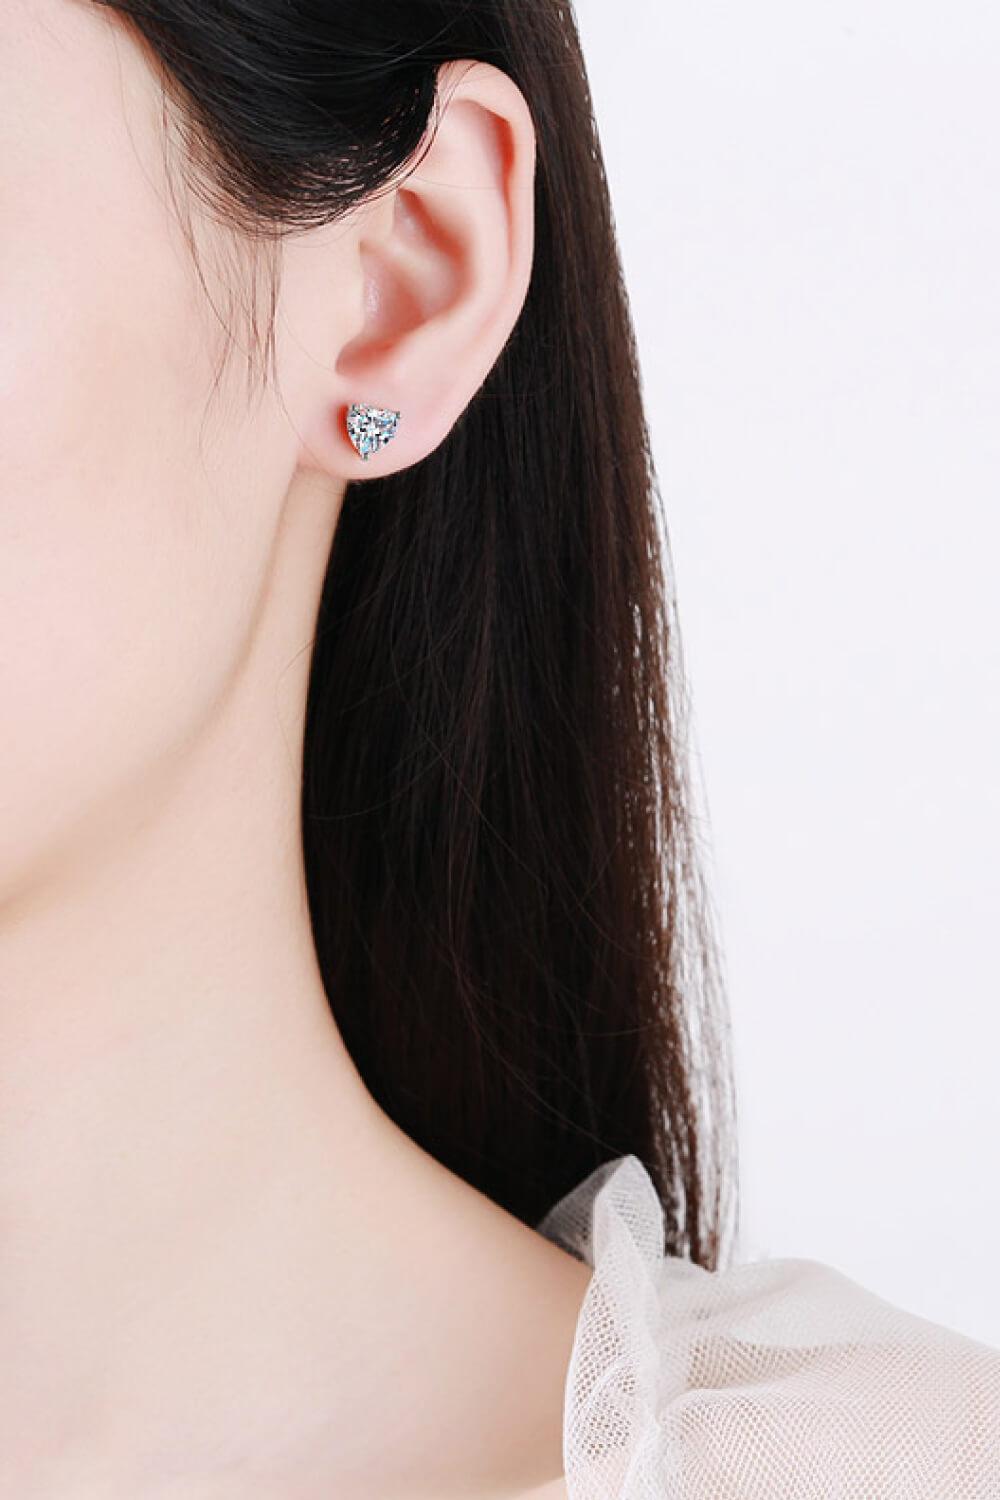 2 Carat Moissanite Heart-Shaped Stud Earrings - Trendha